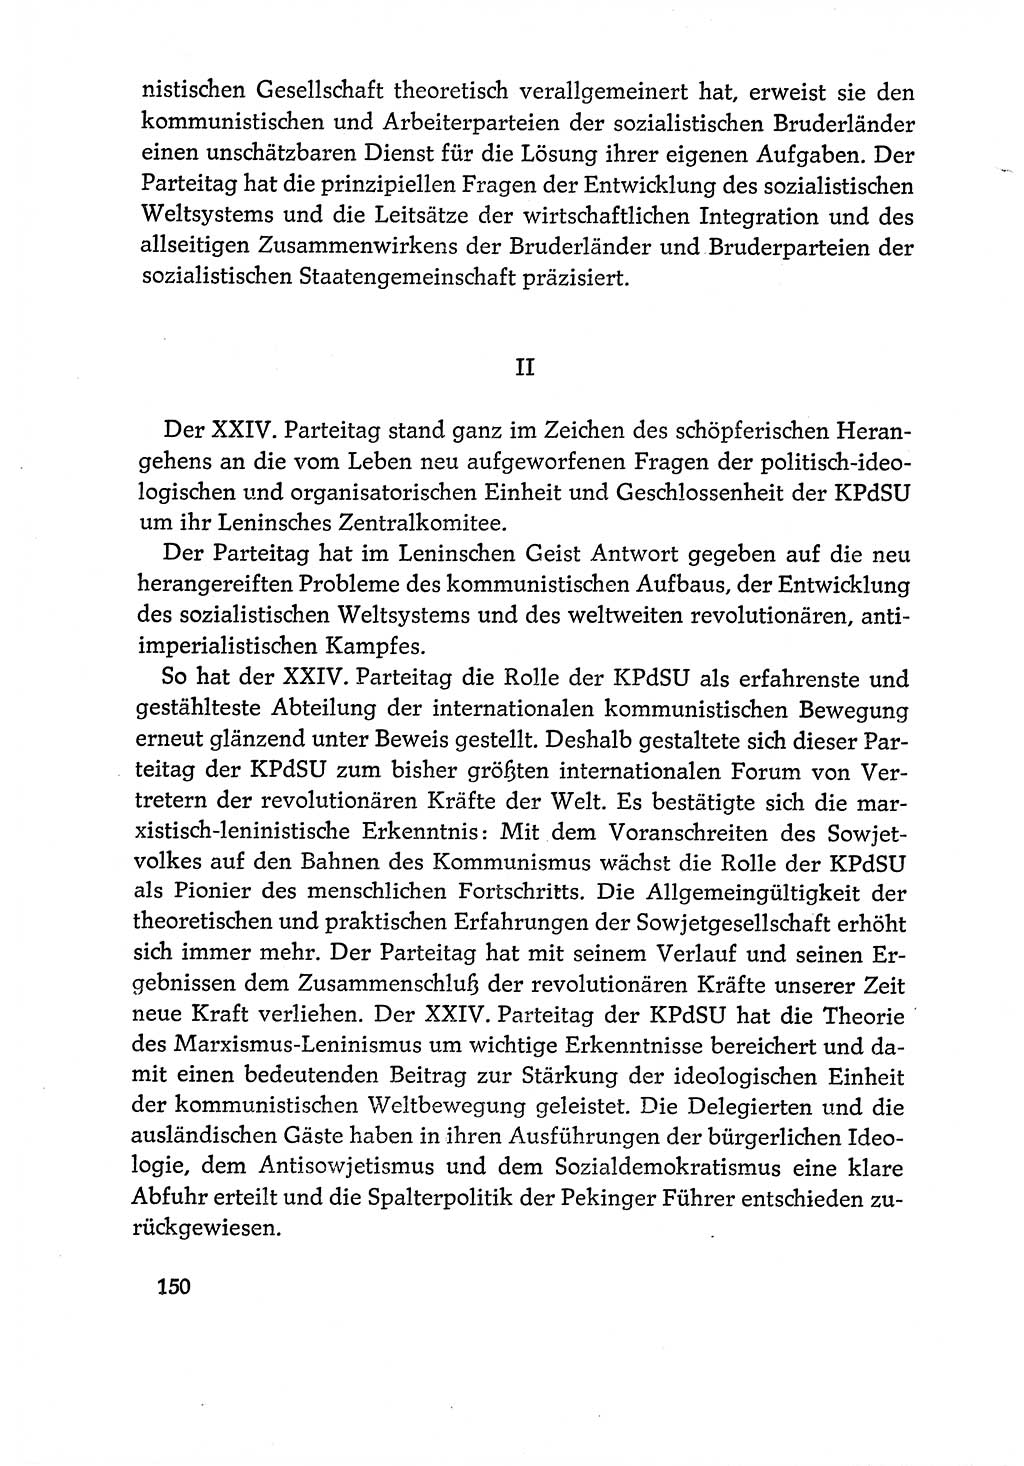 Dokumente der Sozialistischen Einheitspartei Deutschlands (SED) [Deutsche Demokratische Republik (DDR)] 1970-1971, Seite 150 (Dok. SED DDR 1970-1971, S. 150)